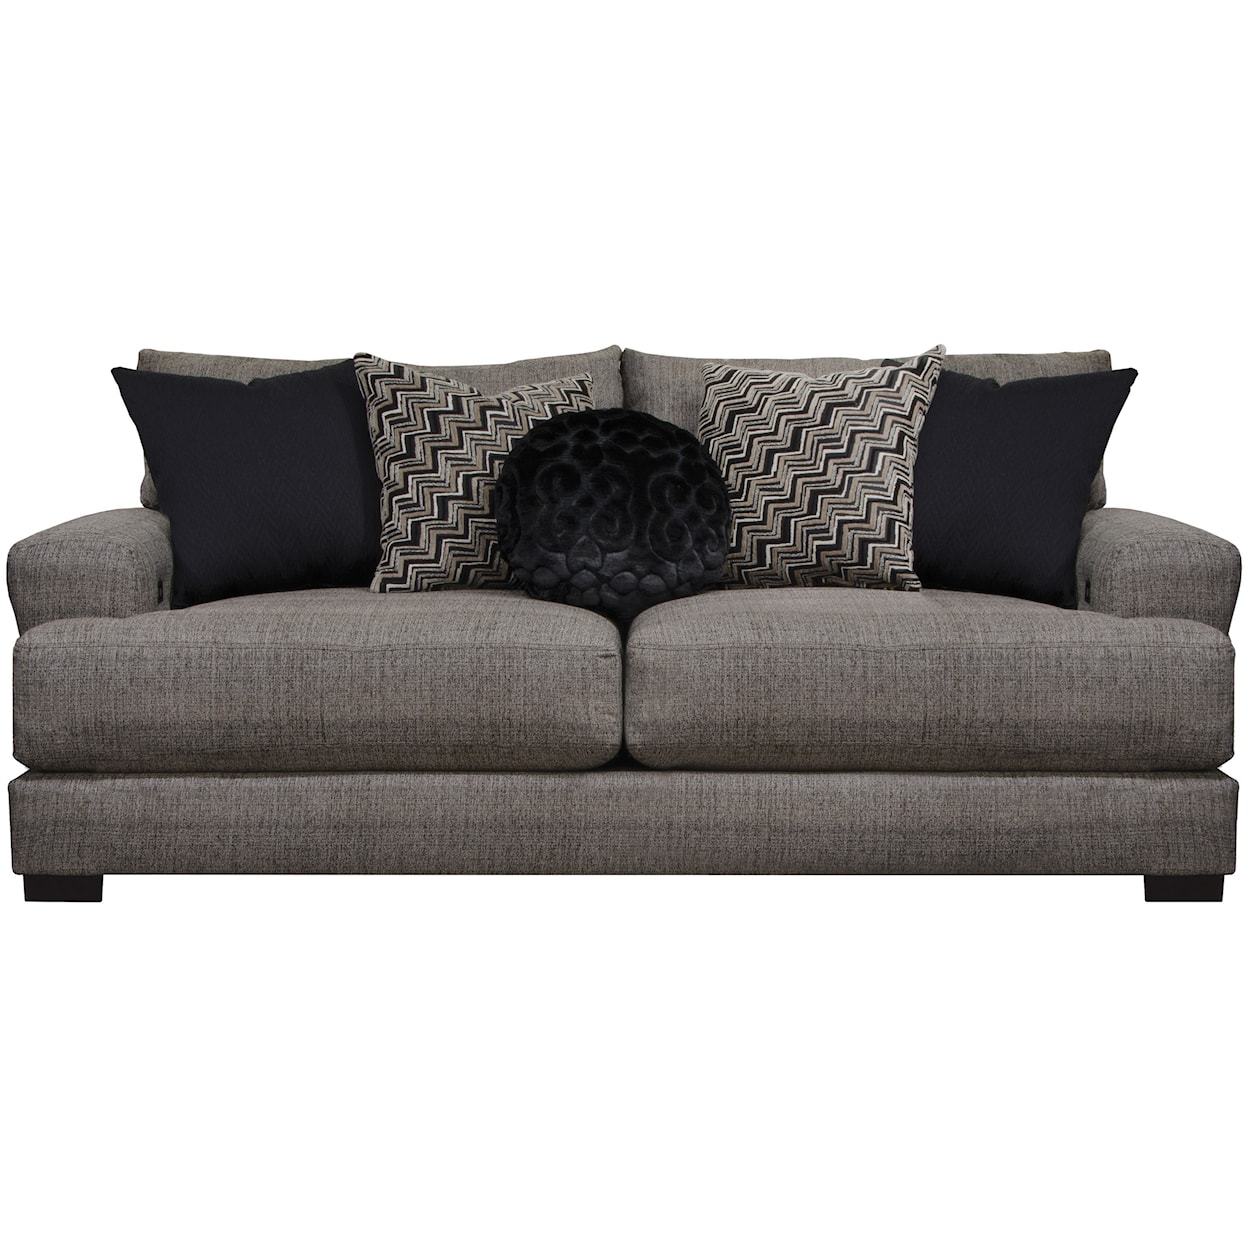 Jackson Furniture 4498 Ava Sofa